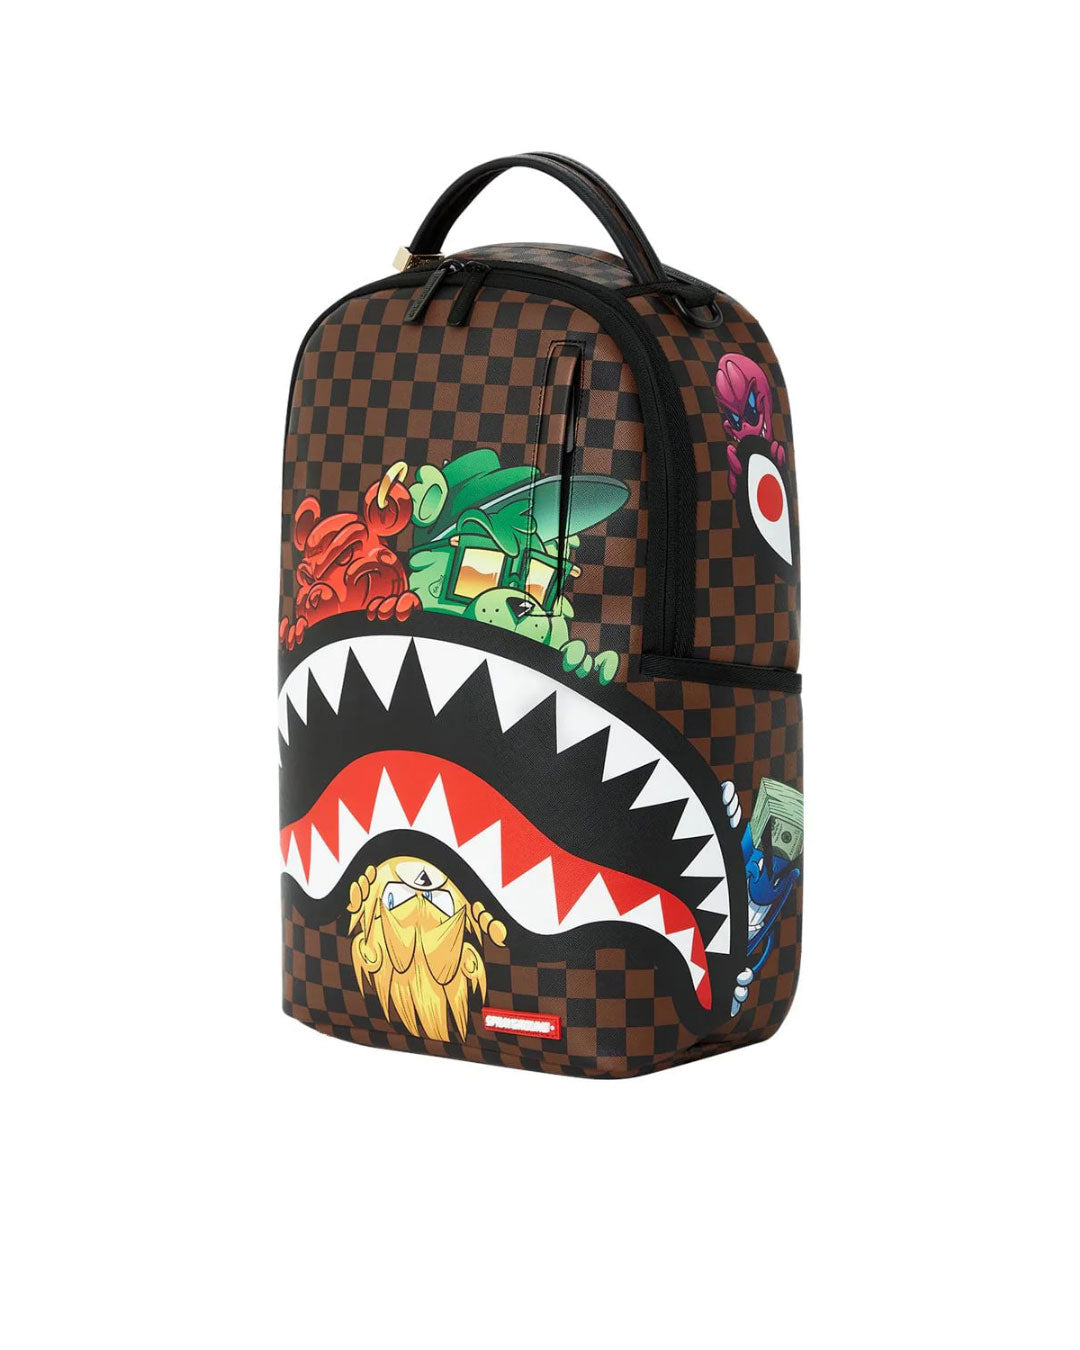 Bape Shark Backpacks for Sale